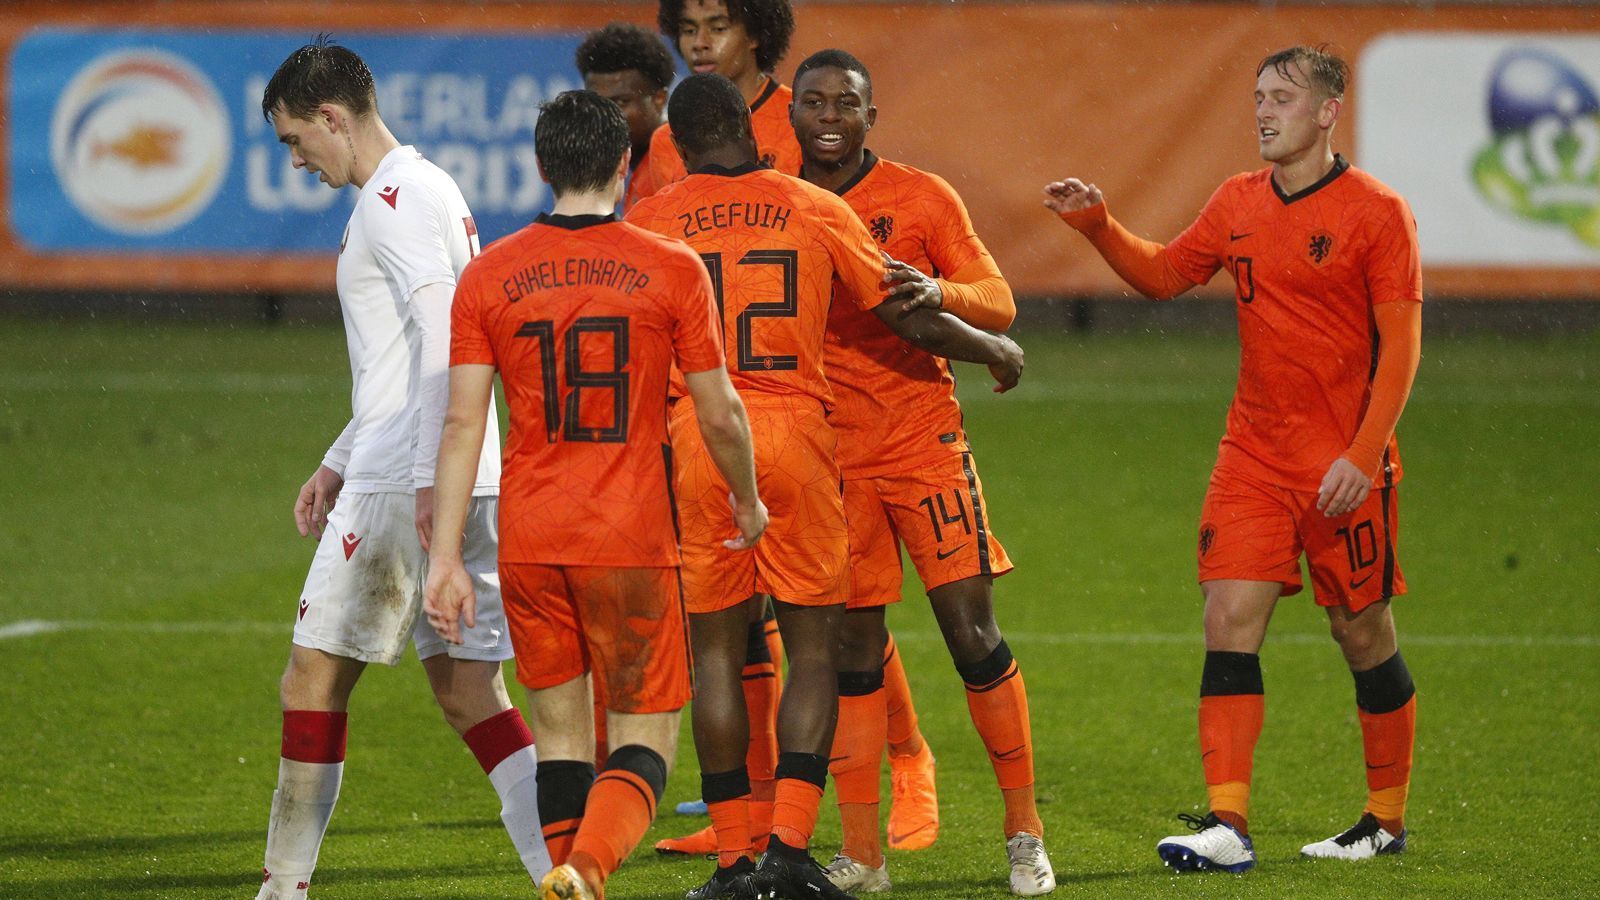 
                <strong>Niederlande: Ballermaschine mit 46 Toren</strong><br>
                Auch in der Qualifikation zur U21-EM 2021 ließ das Team von Bondscoach Marcel Groninger nichts anbrennen. Mit neun Siegen und nur einer Niederlage setzte sich das Team problemlos in Gruppe 7 durch - dank des Torverhältnisses von 46:5 am Ende sogar noch vor den punktgleichen Portugiesen, die im Gegensatz zu den Niederlanden letztlich nur 29:9-Treffer vorzuweisen hatten.
              